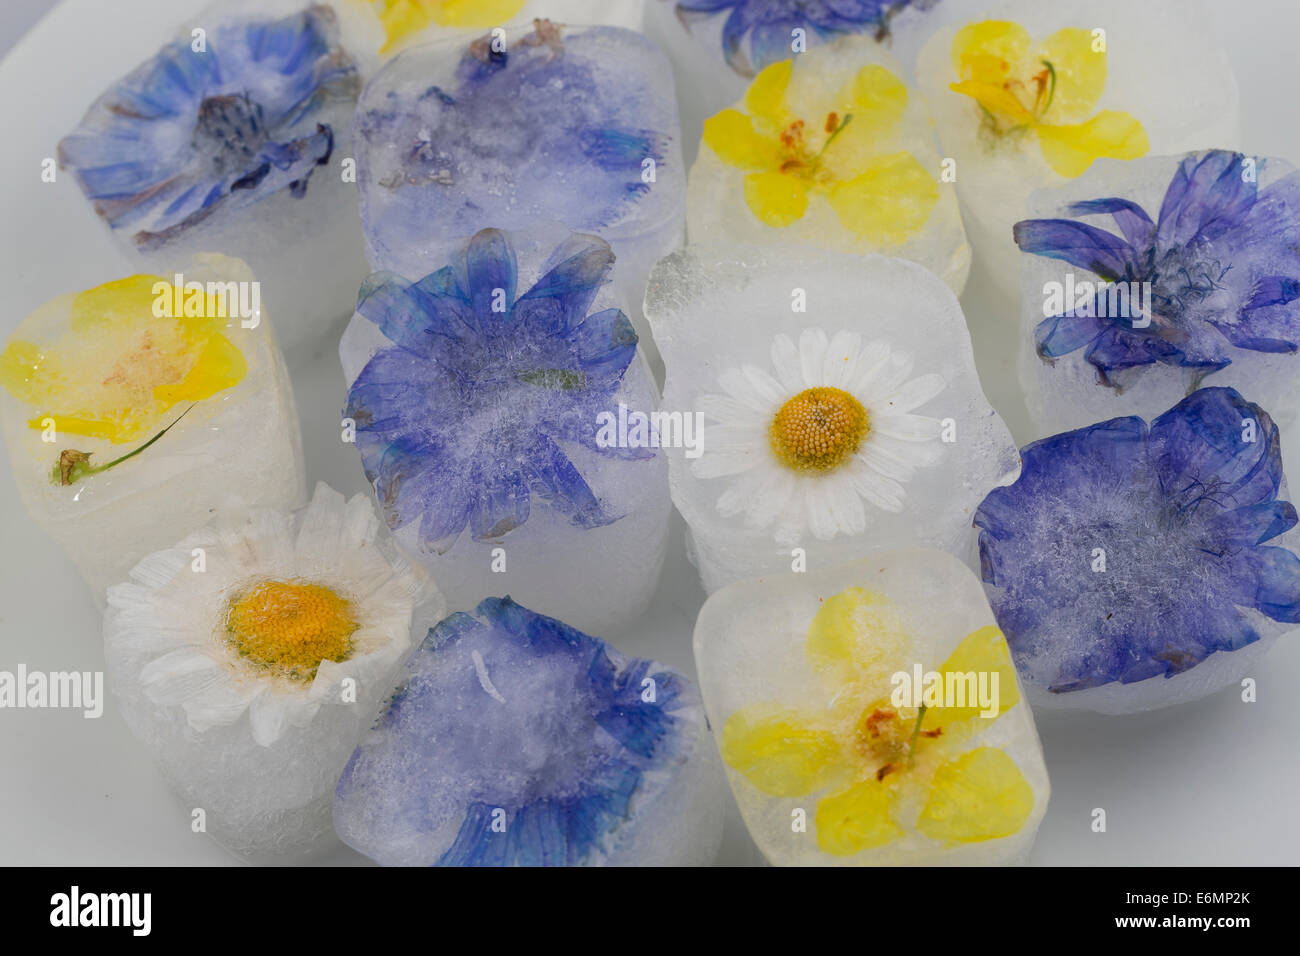 Ice Cube, cubes de glace avec fleurs comestibles, fleurs, Blüteneiswürfel Blüten-Eiswürfel, Eiswürfel, mit Blüten, Blütenblättern Banque D'Images